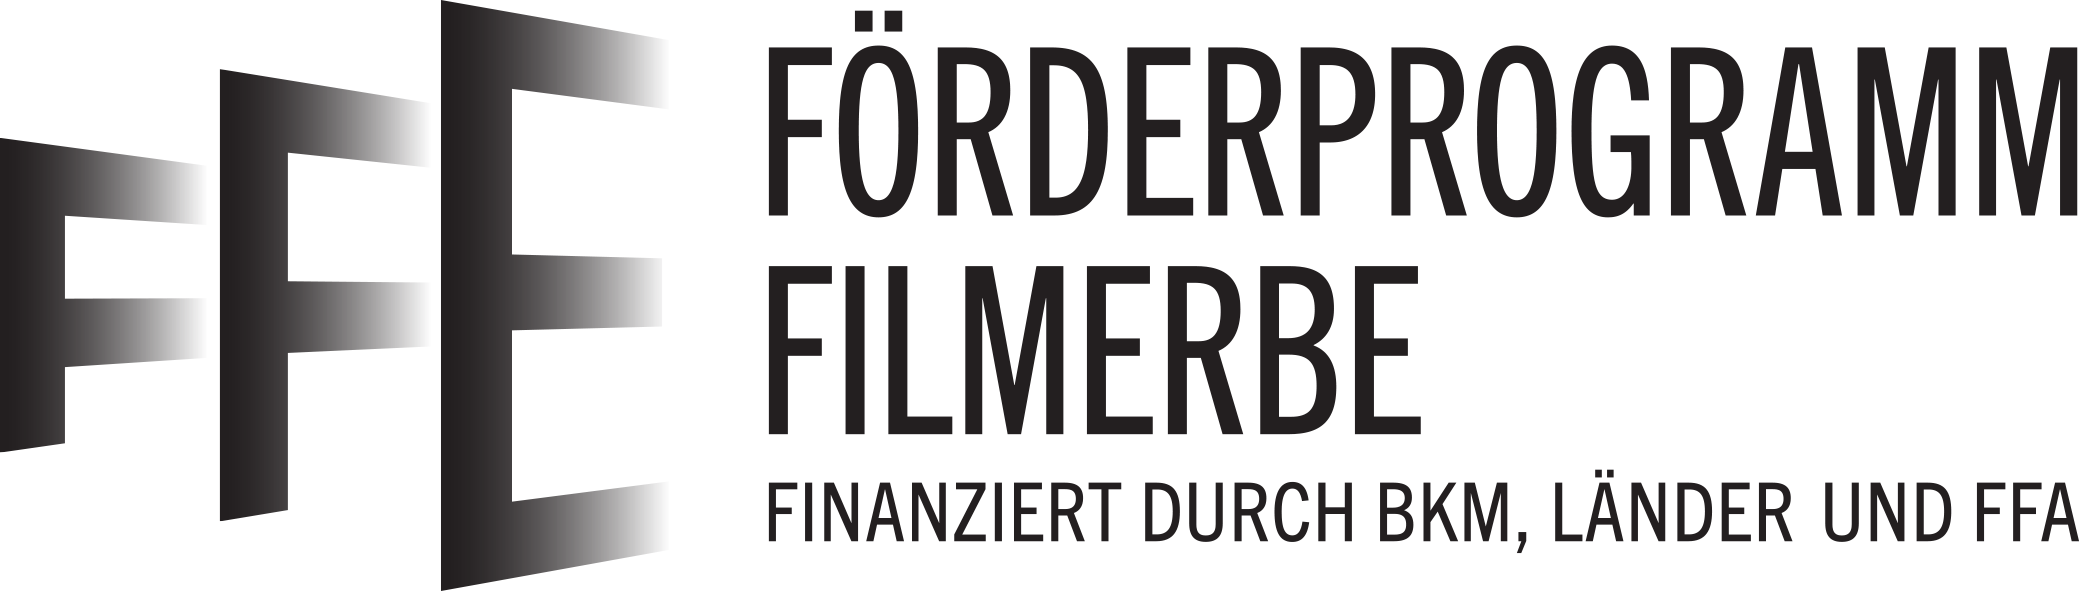 FFE - Förderprogramm Filmerbe, finanziert durch BKM, Länder und FFA